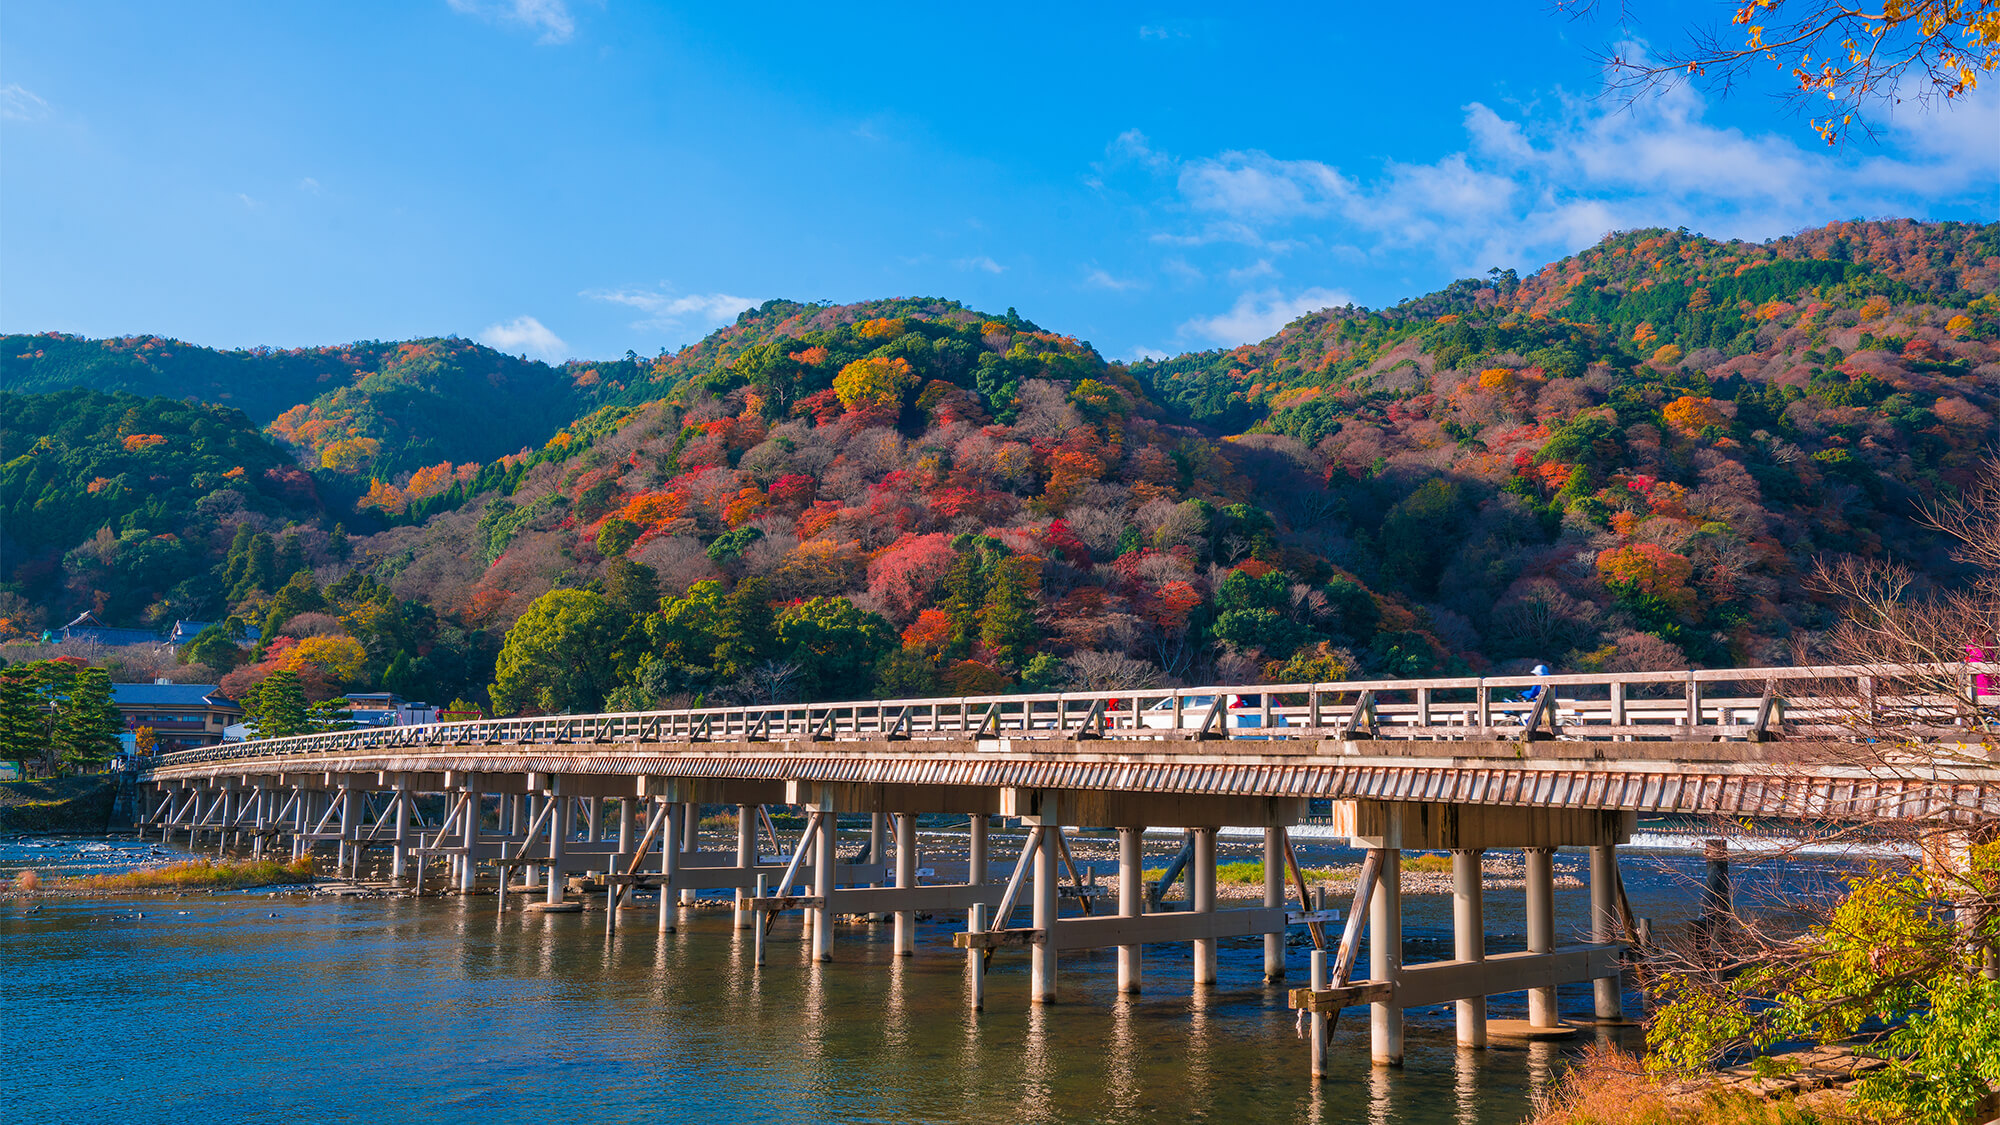 【嵐山 渡月橋(とげつきょう)】紅葉の名所と知られる嵐山。山々が艶やかに色づく秋